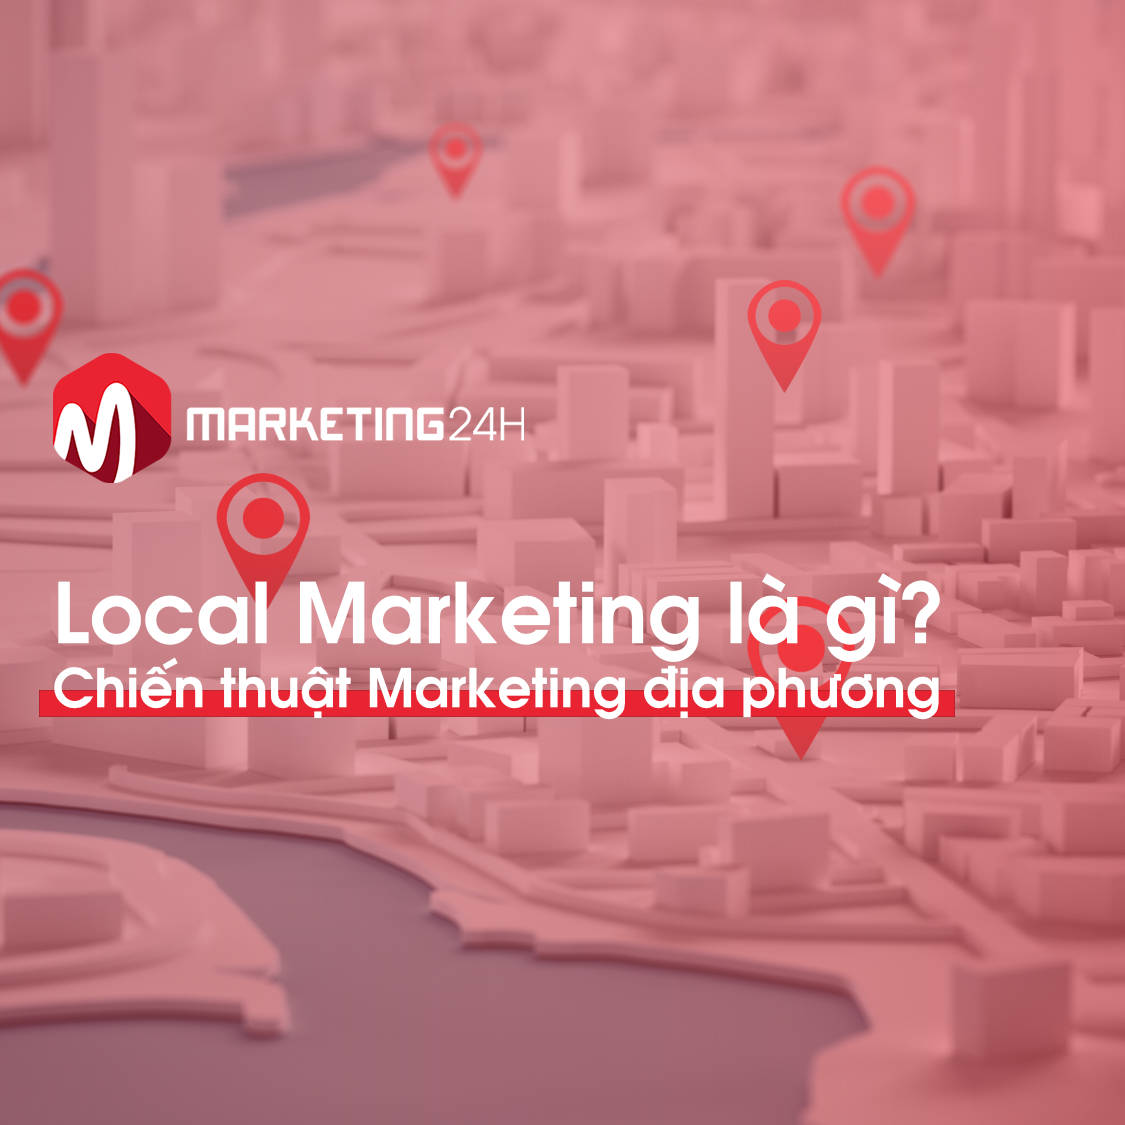 Local Marketing là gì? Chiến thuật Marketing địa phương